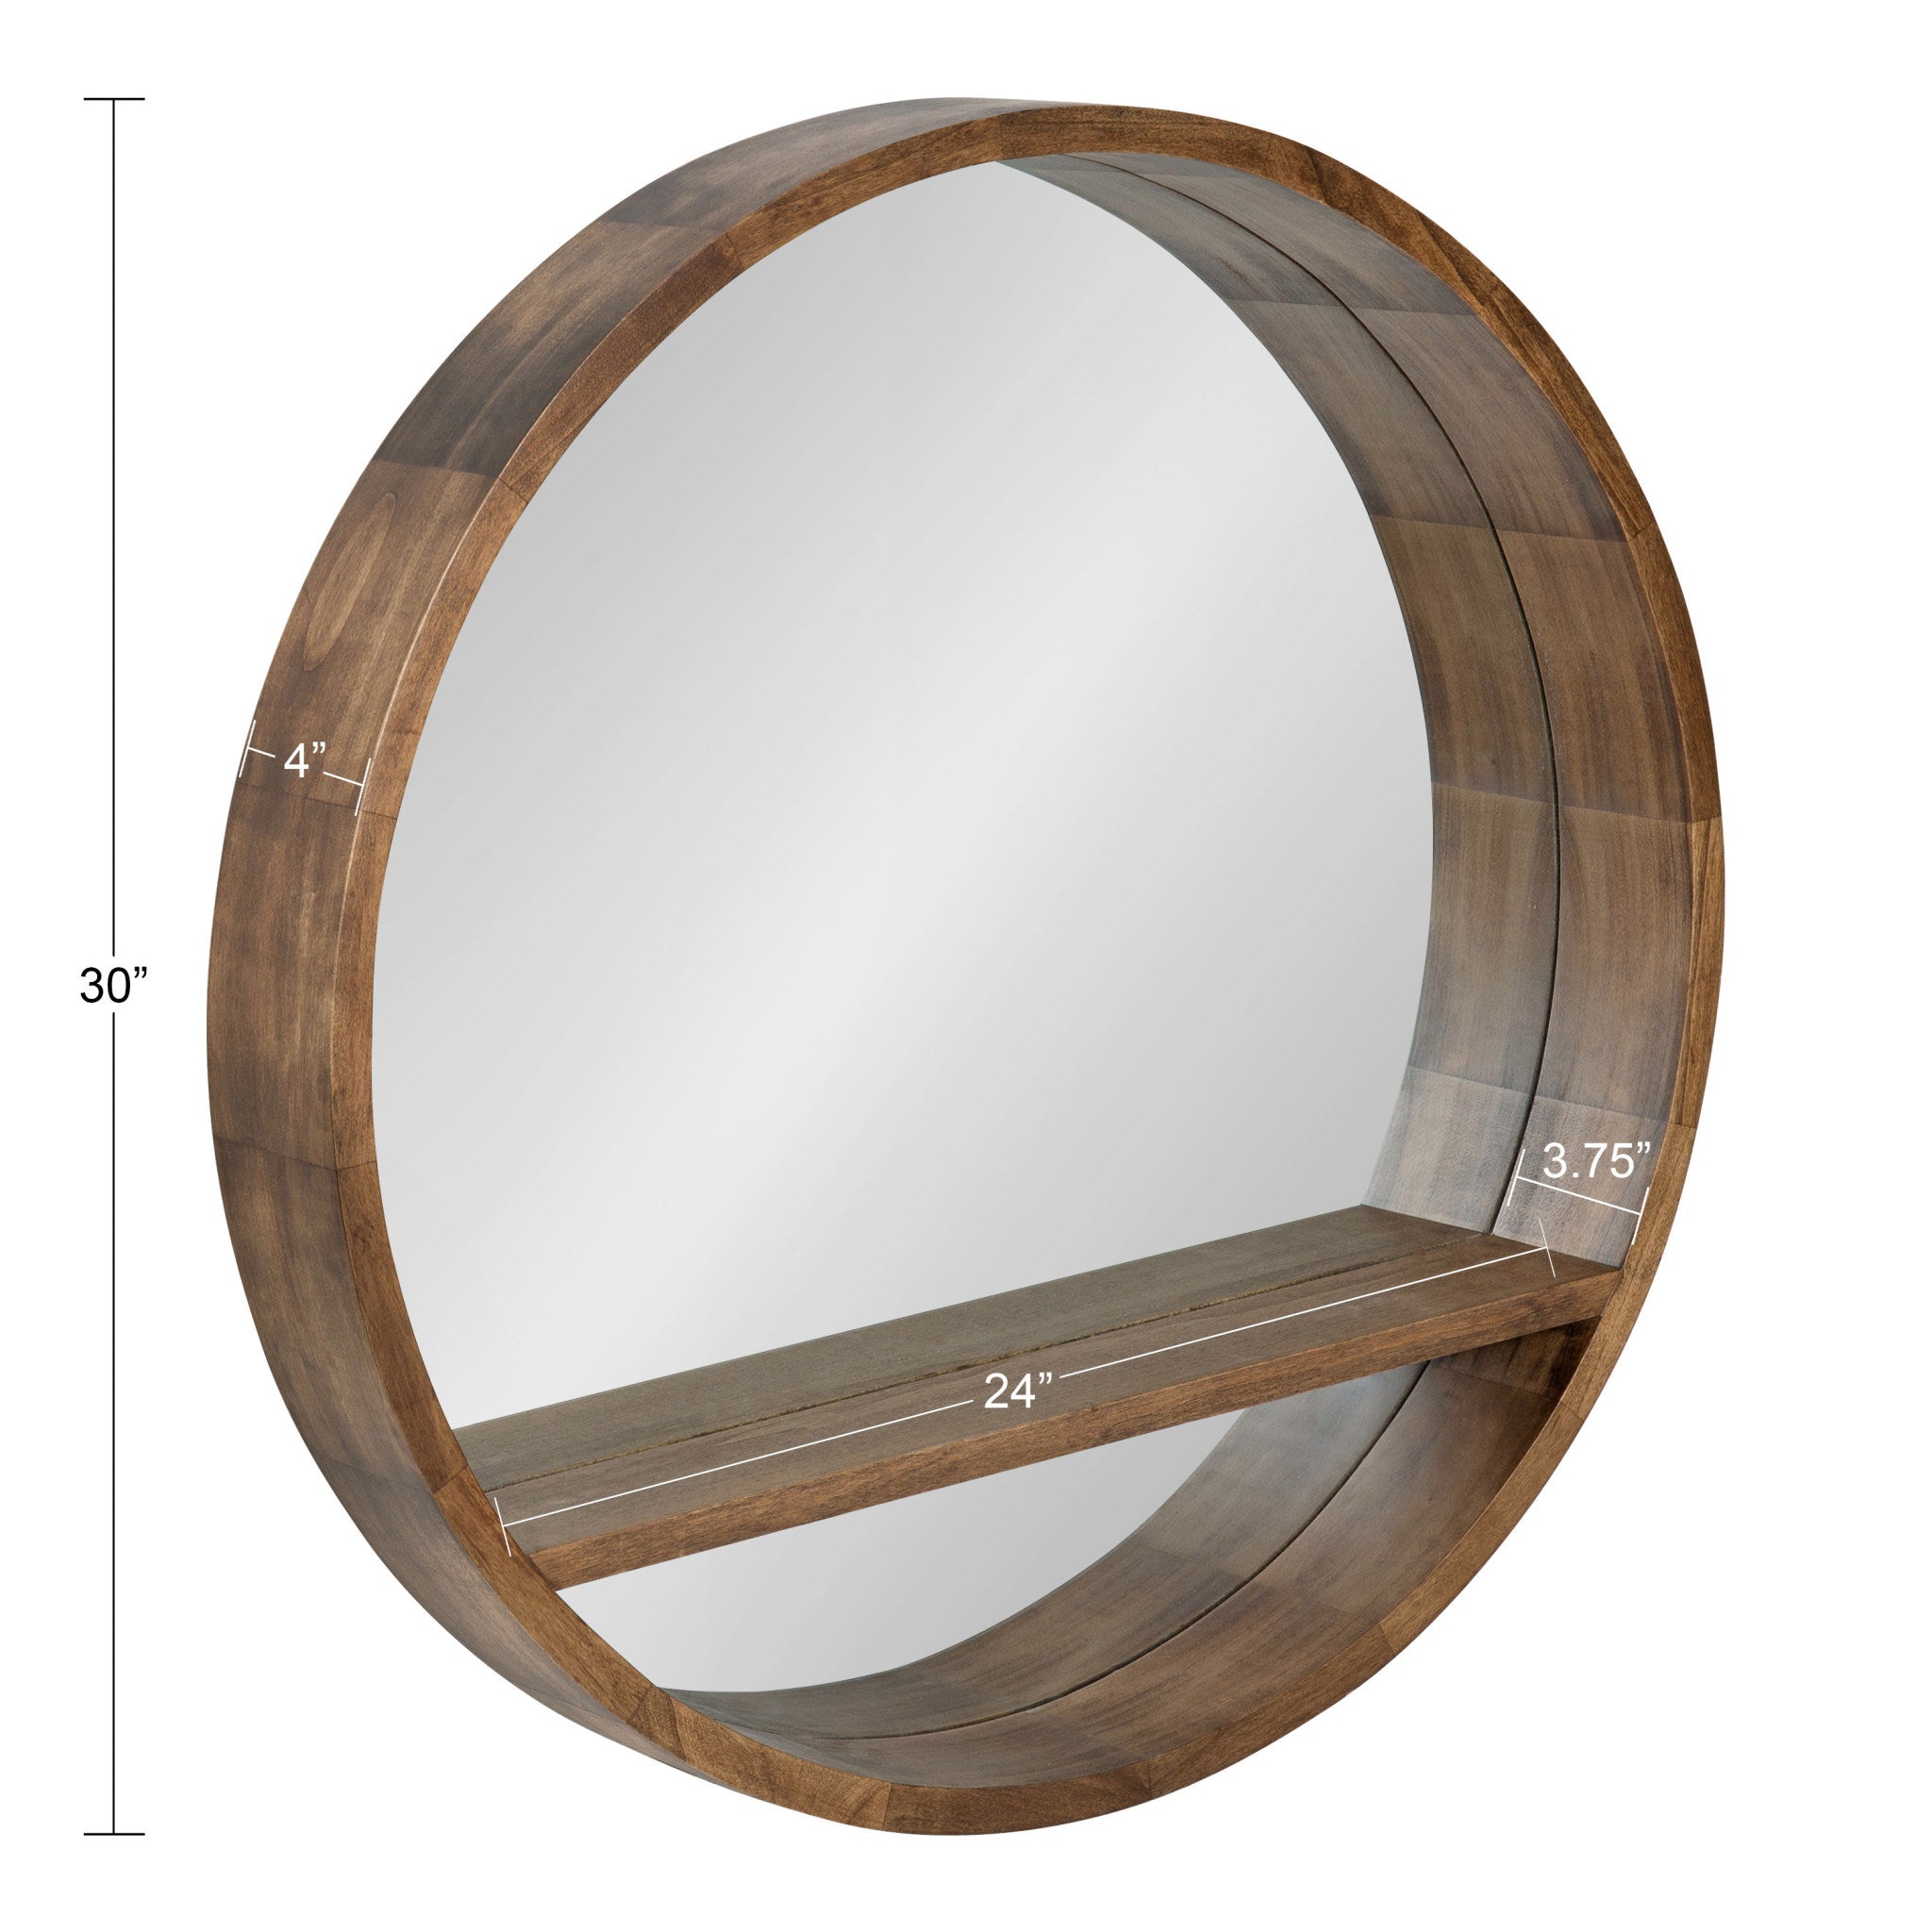 Hutton Round Mirror with Shelf